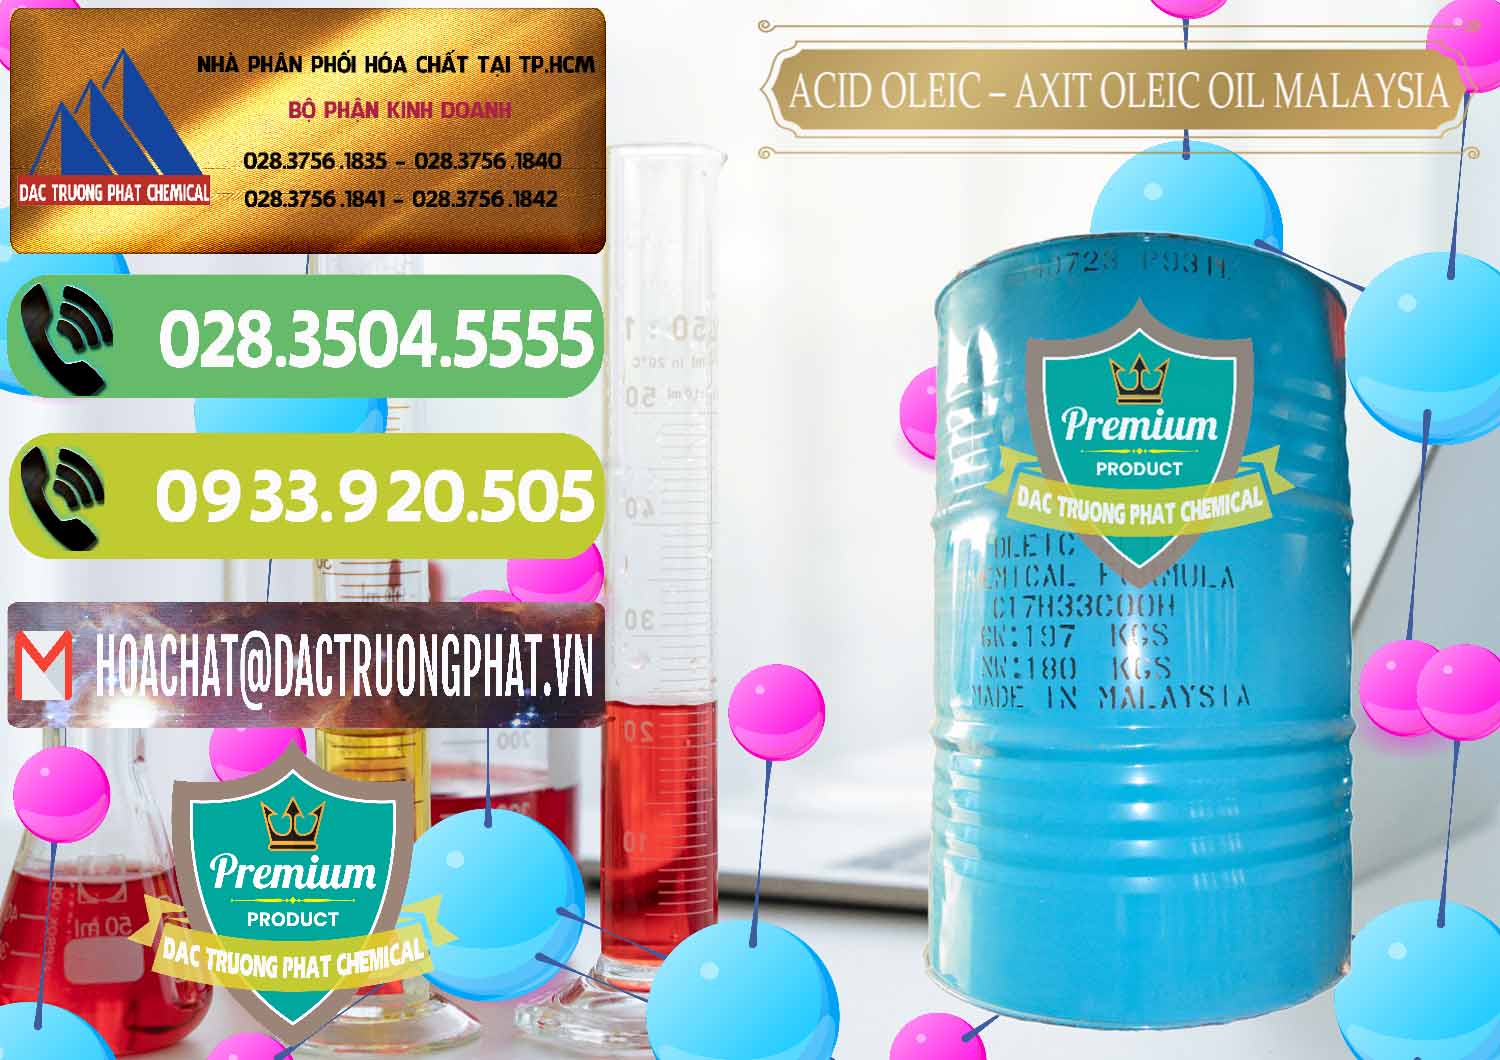 Nơi chuyên cung cấp _ bán Acid Oleic – Axit Oleic Oil Malaysia - 0013 - Cung cấp _ phân phối hóa chất tại TP.HCM - hoachatmientay.vn